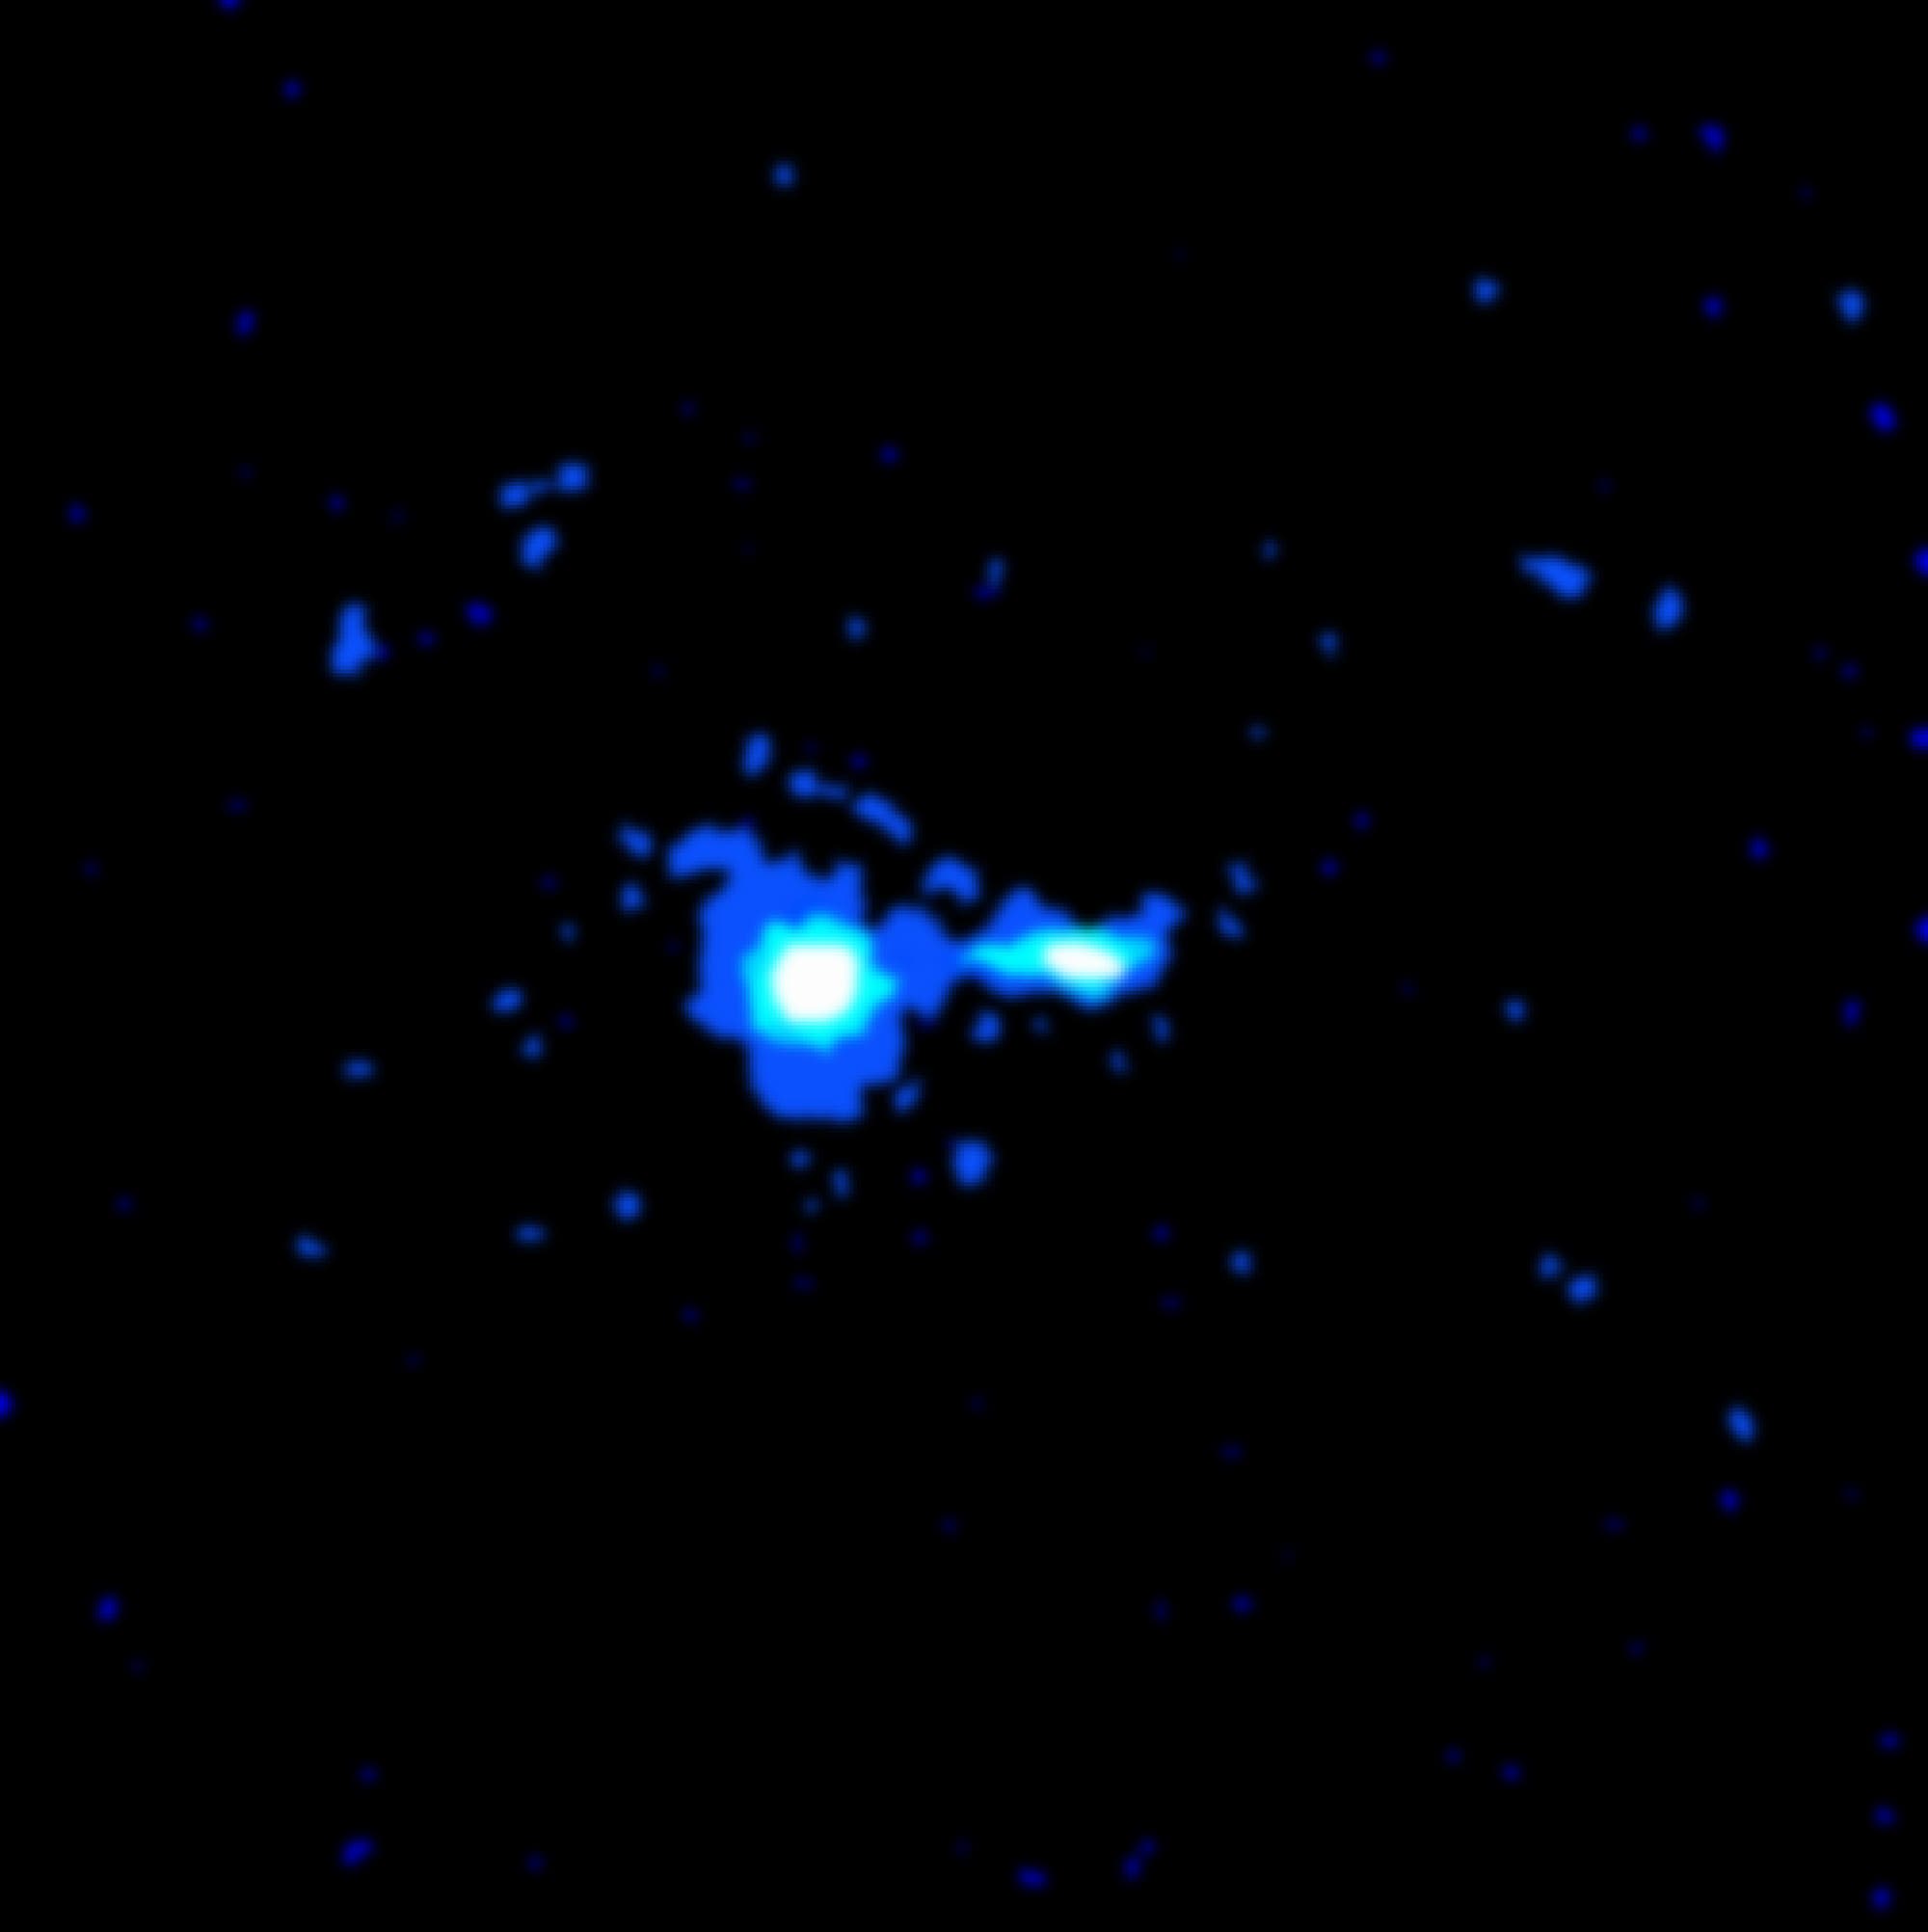 Quasar PKS 0637-752